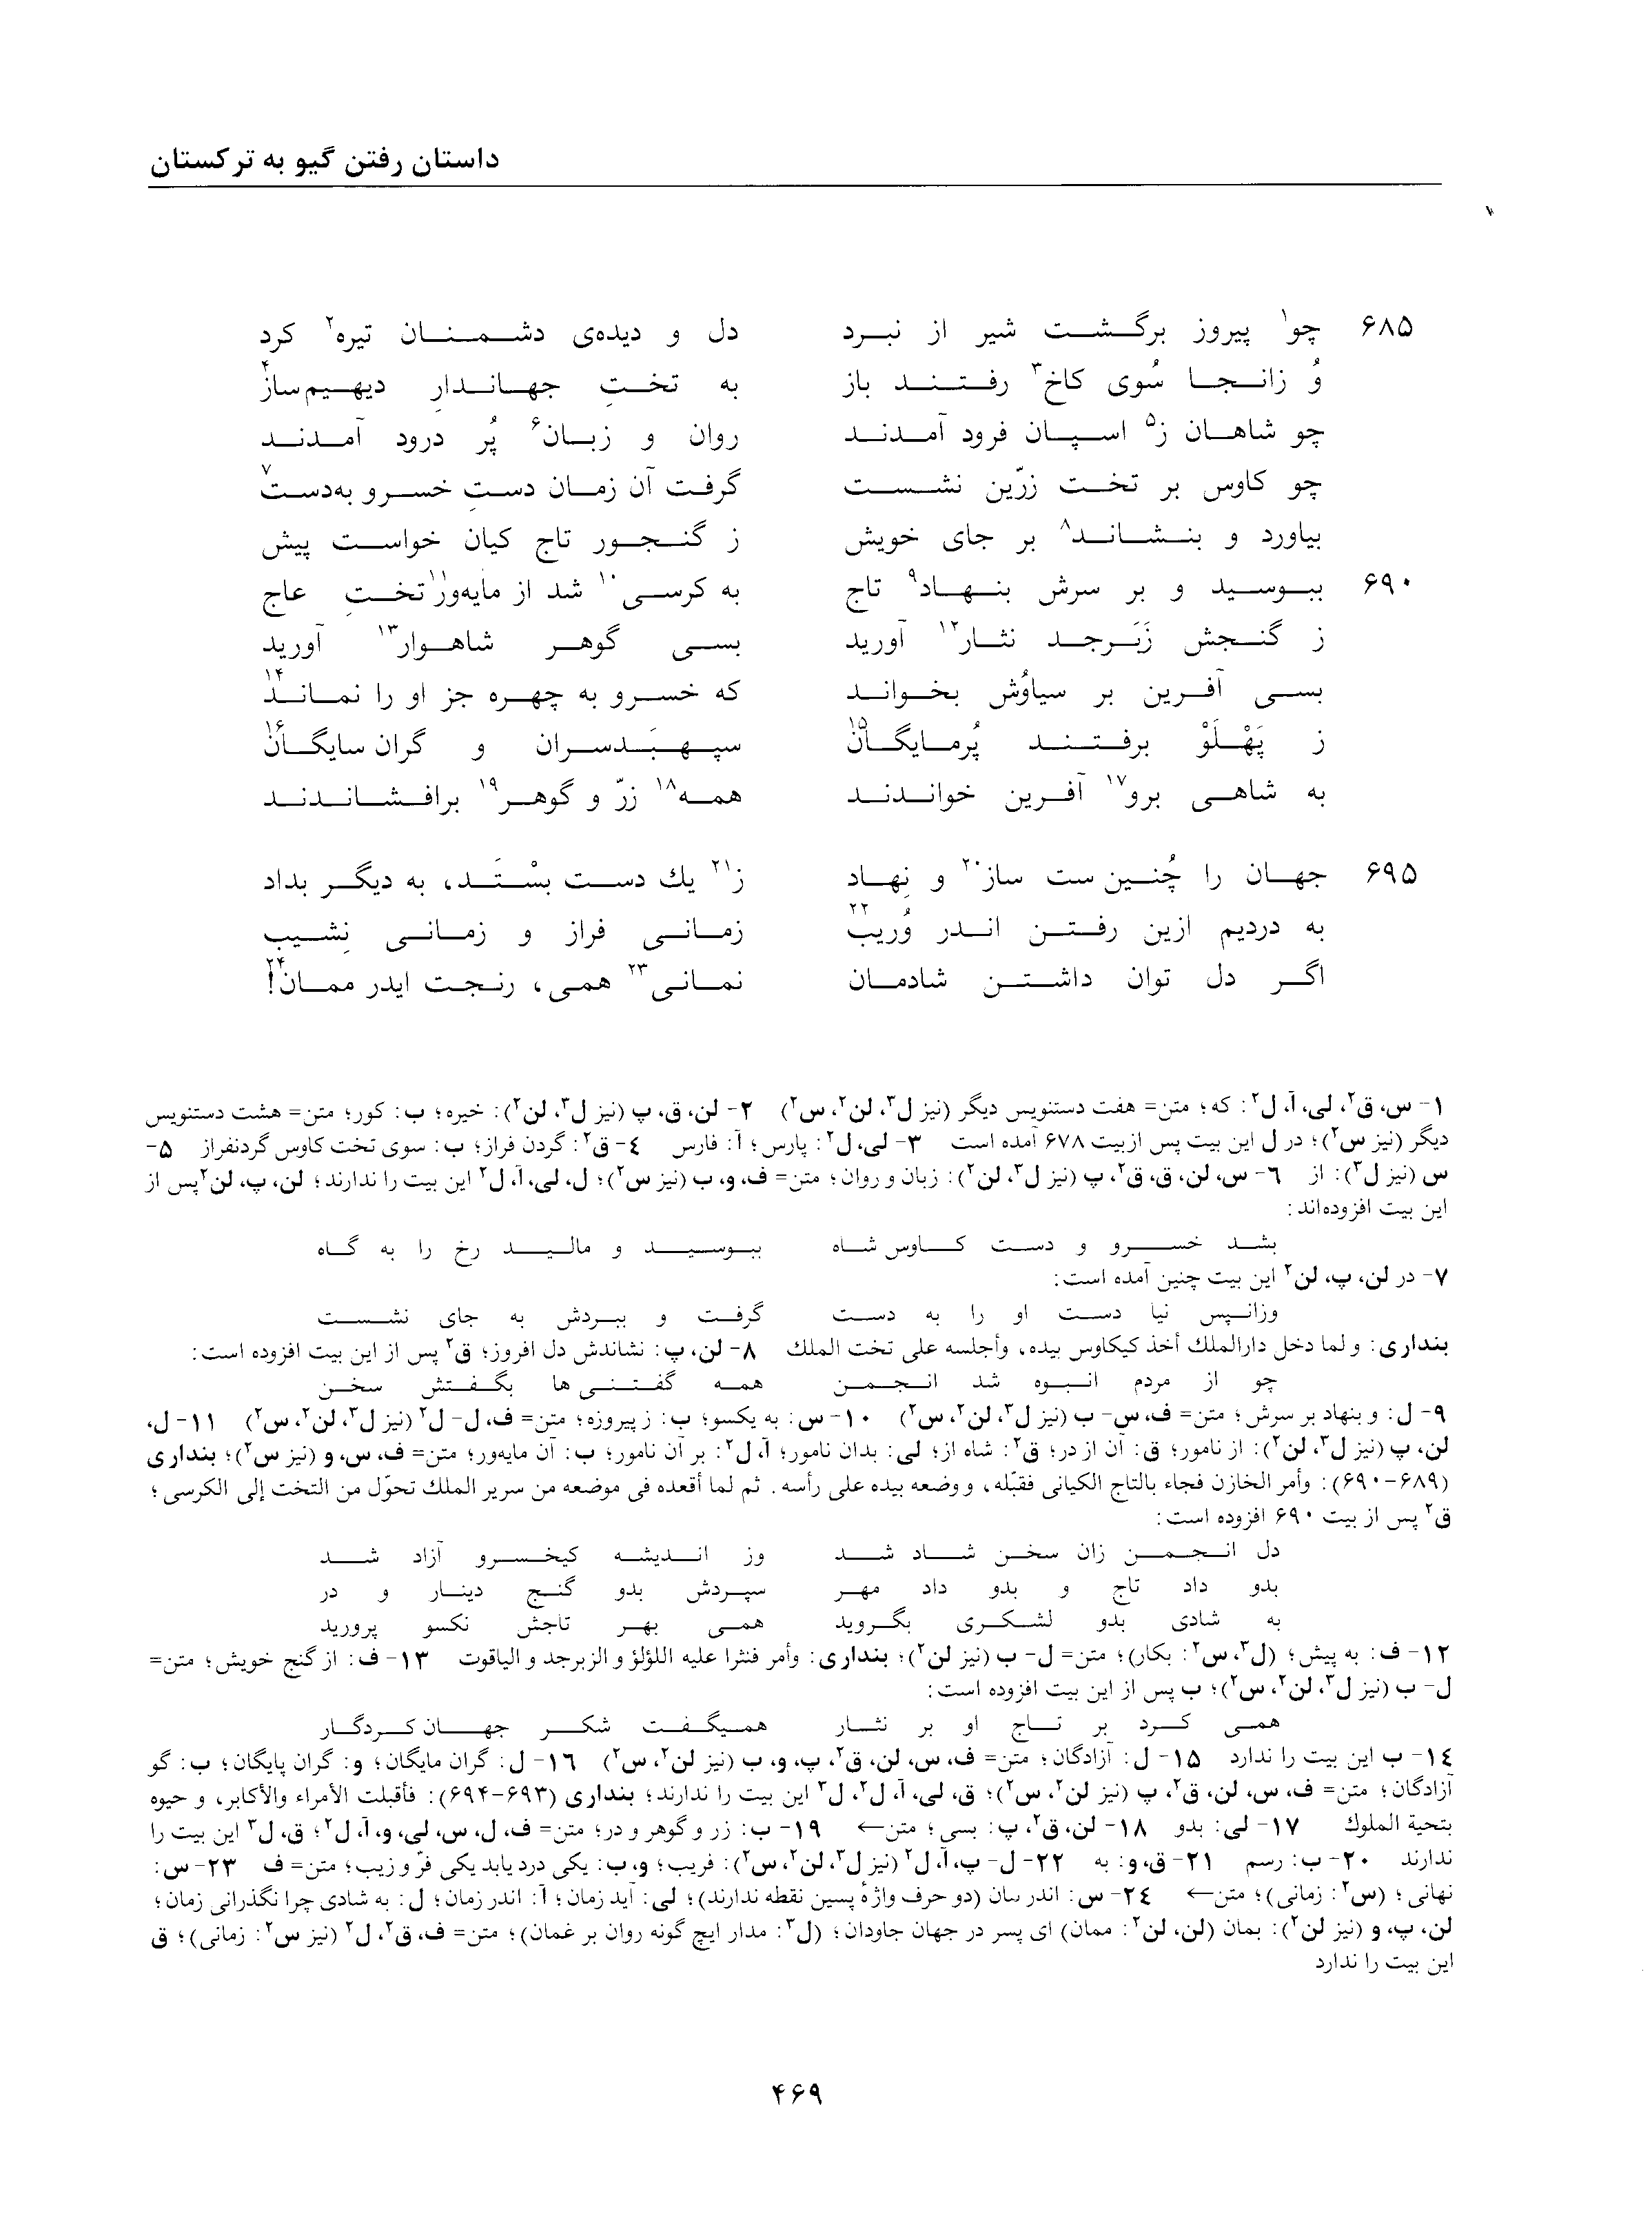 vol. 2, p. 469